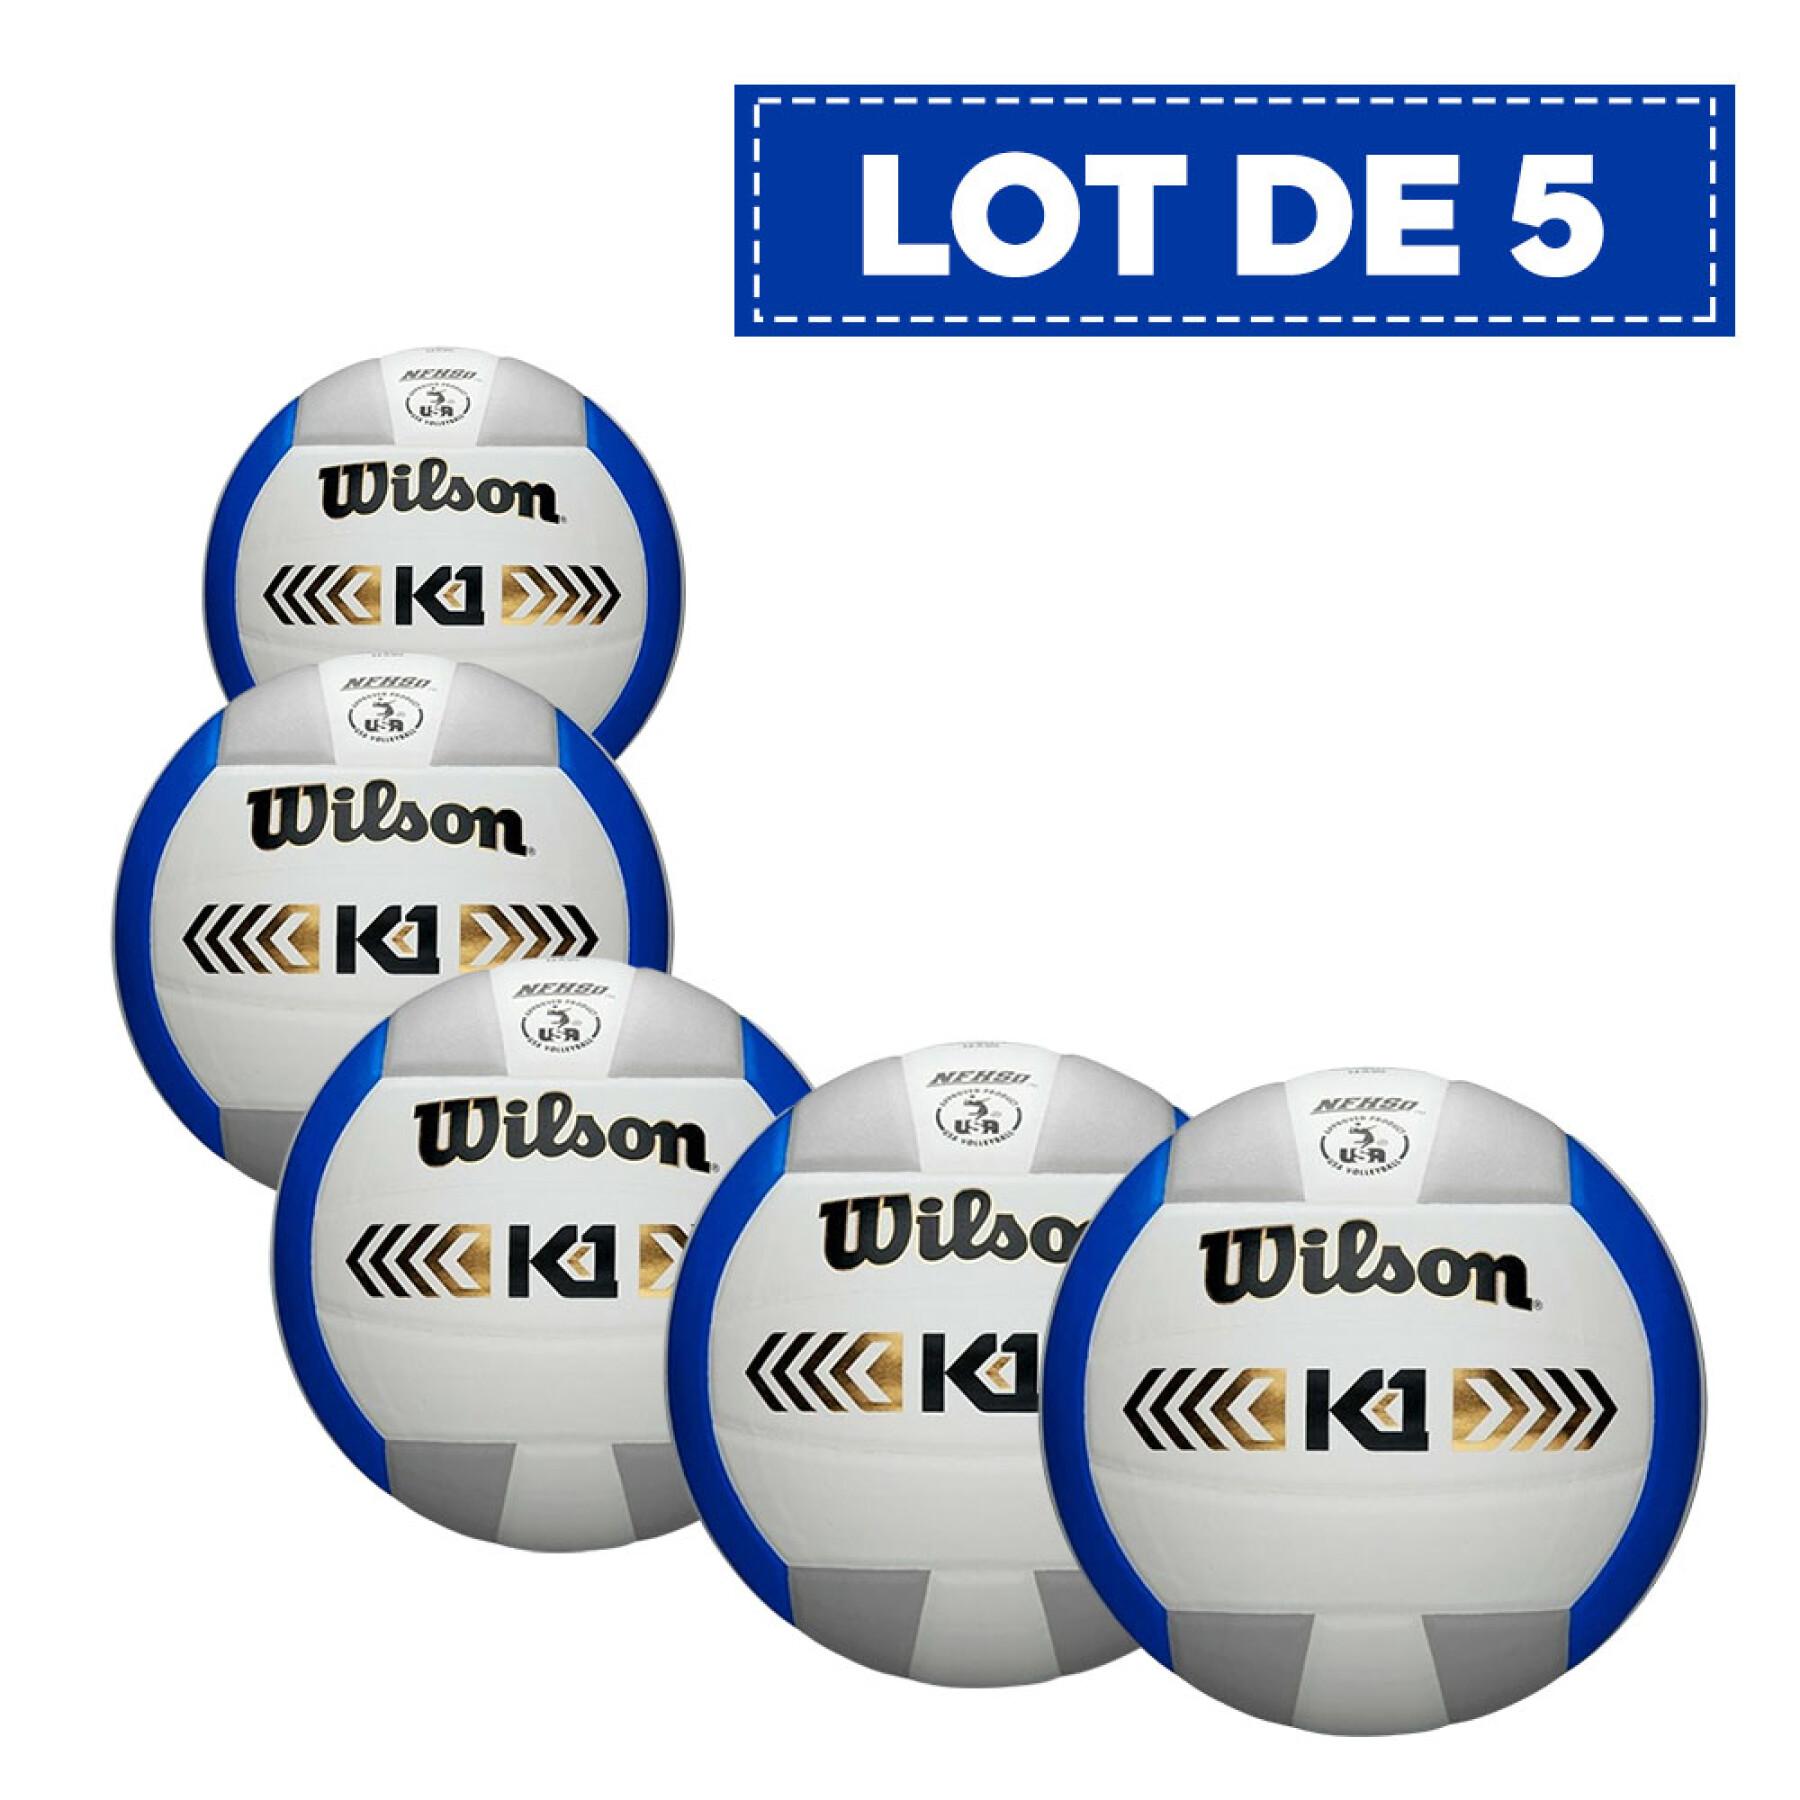 Lot de 5 Ballons volleyball Wilson K1 Gold [Taille 5]